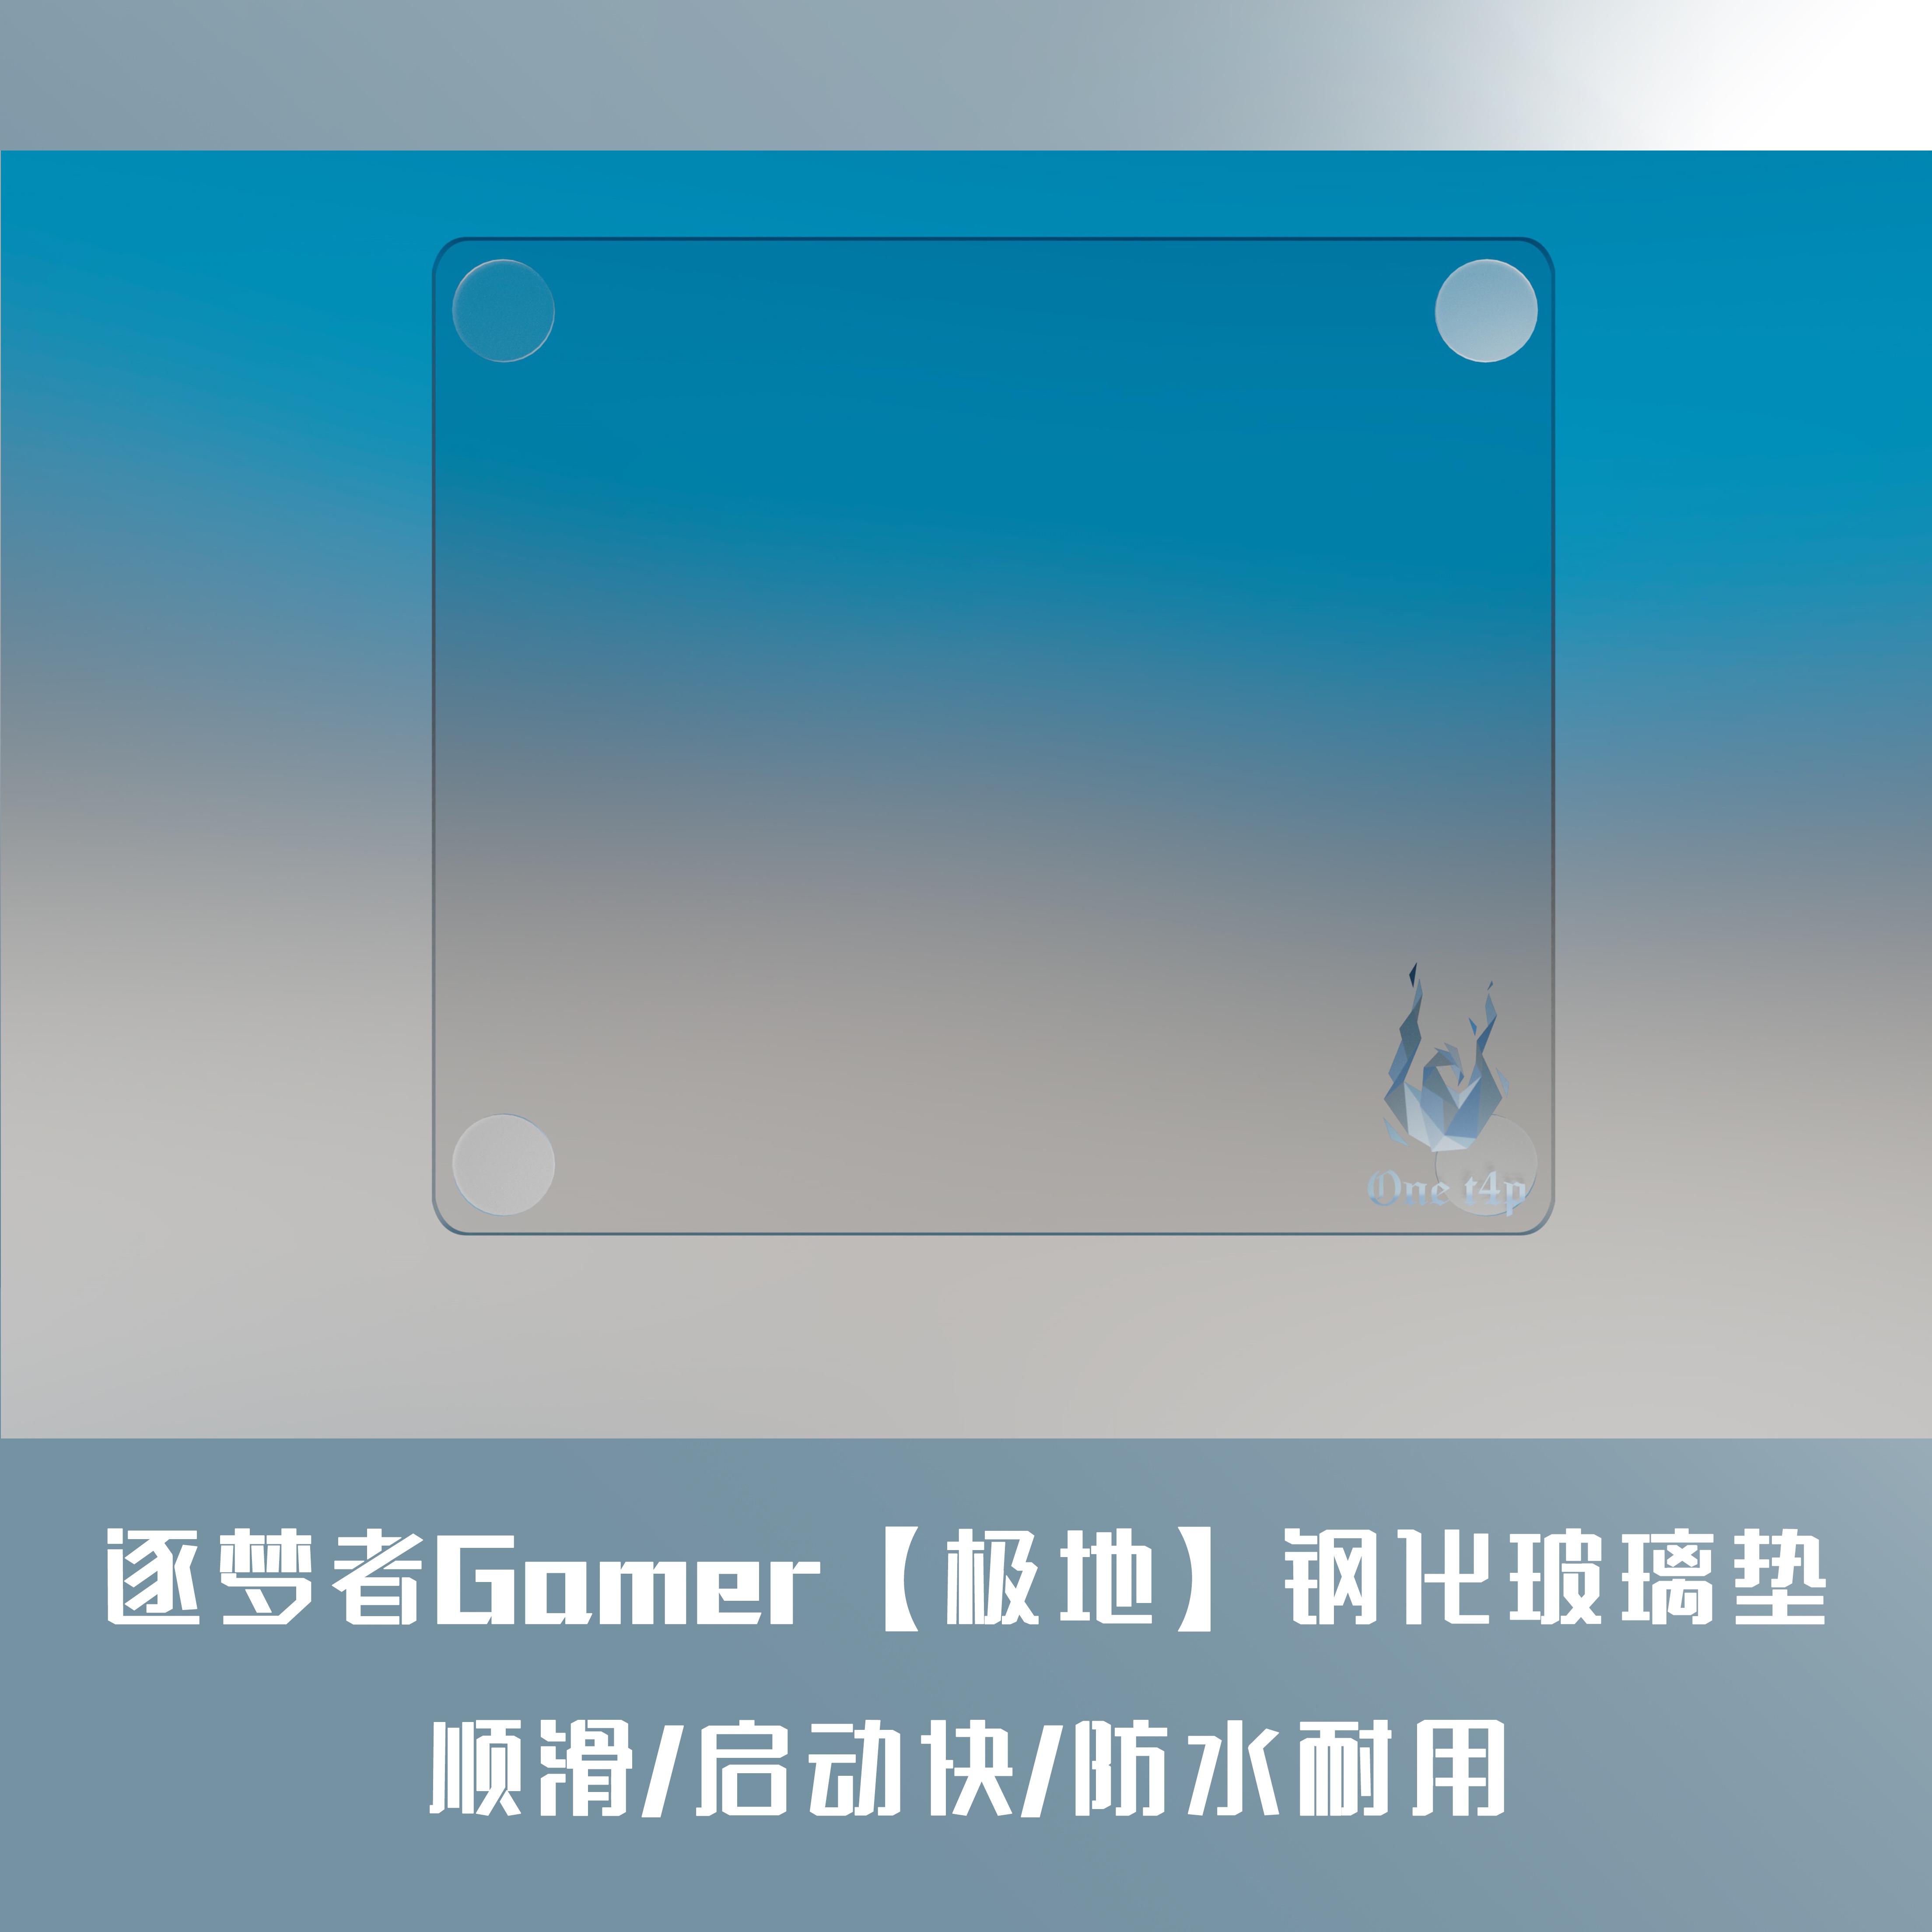 逐梦者Gamer【雷】电竞钢化玻璃鼠标垫顺滑操控FPS比赛耐用启动快- Taobao